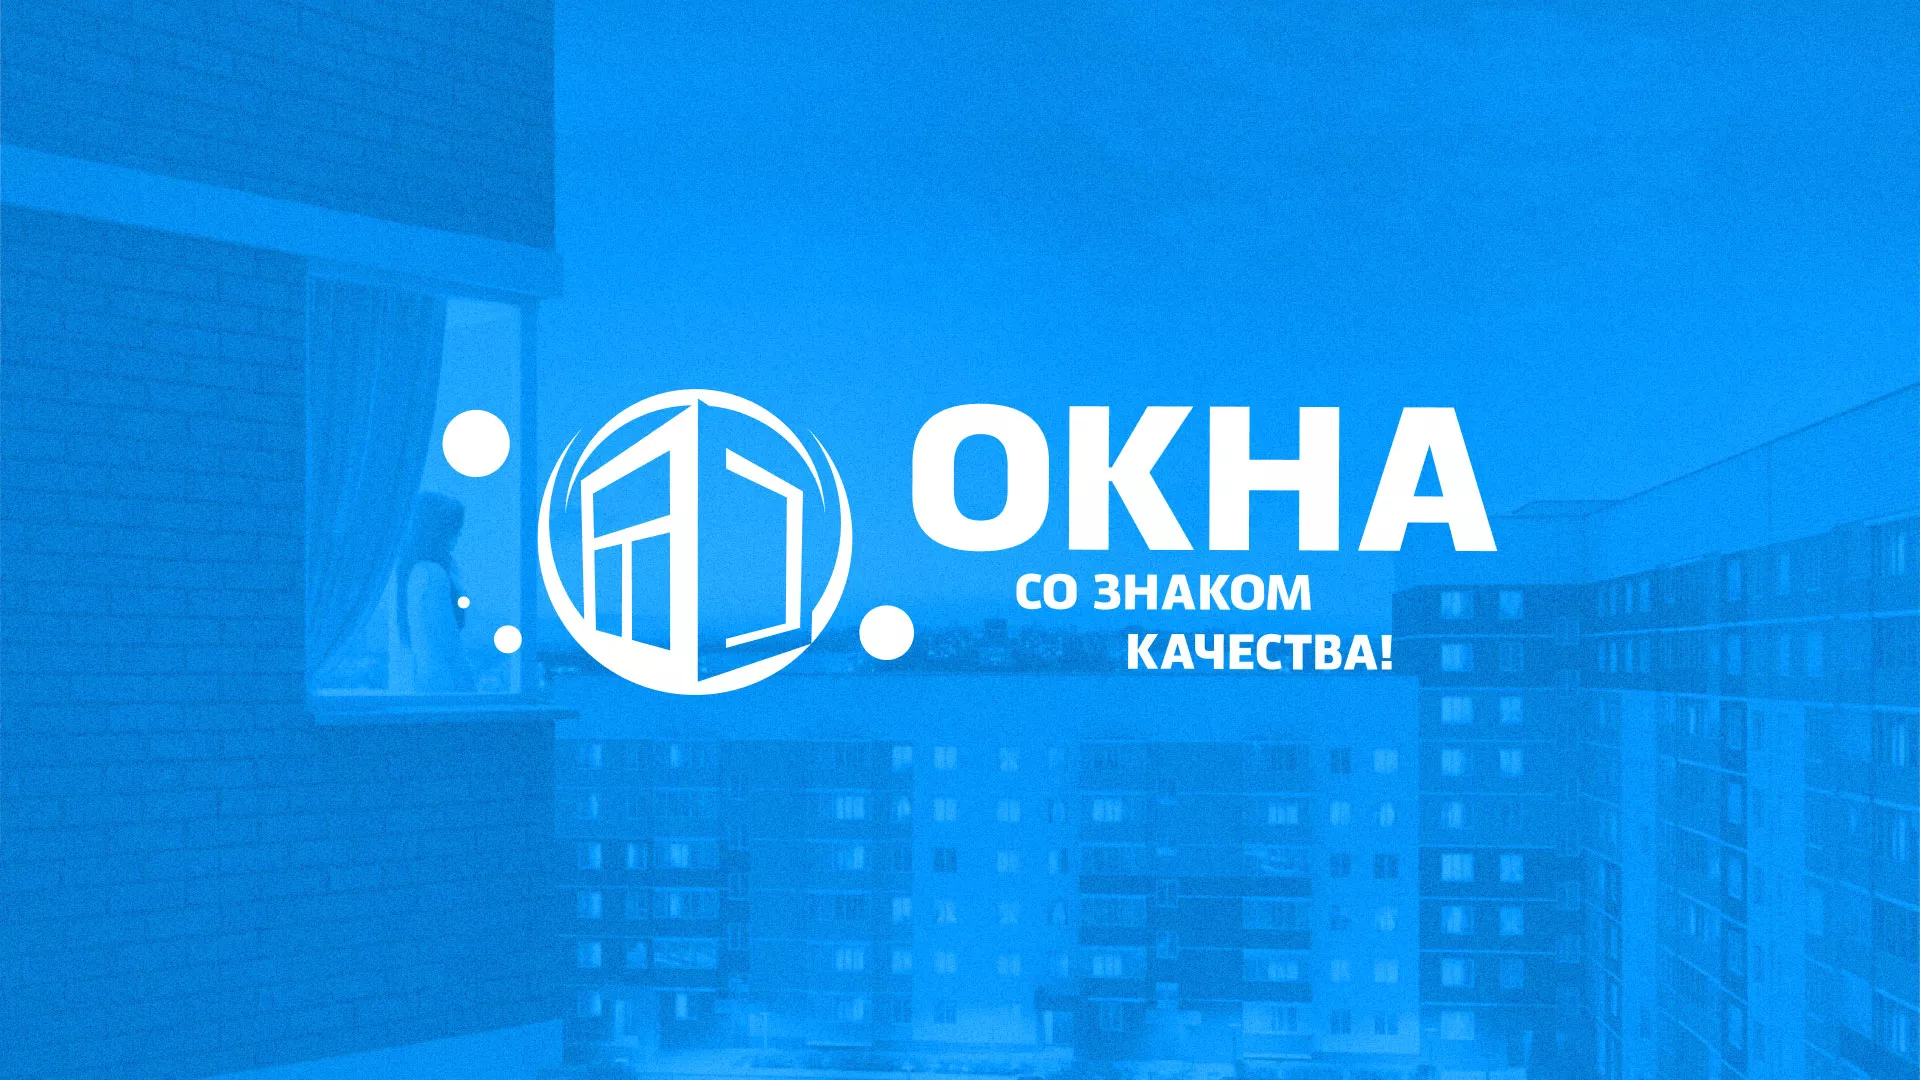 Создание сайта компании «Окна ВИДО» в Шахтёрске